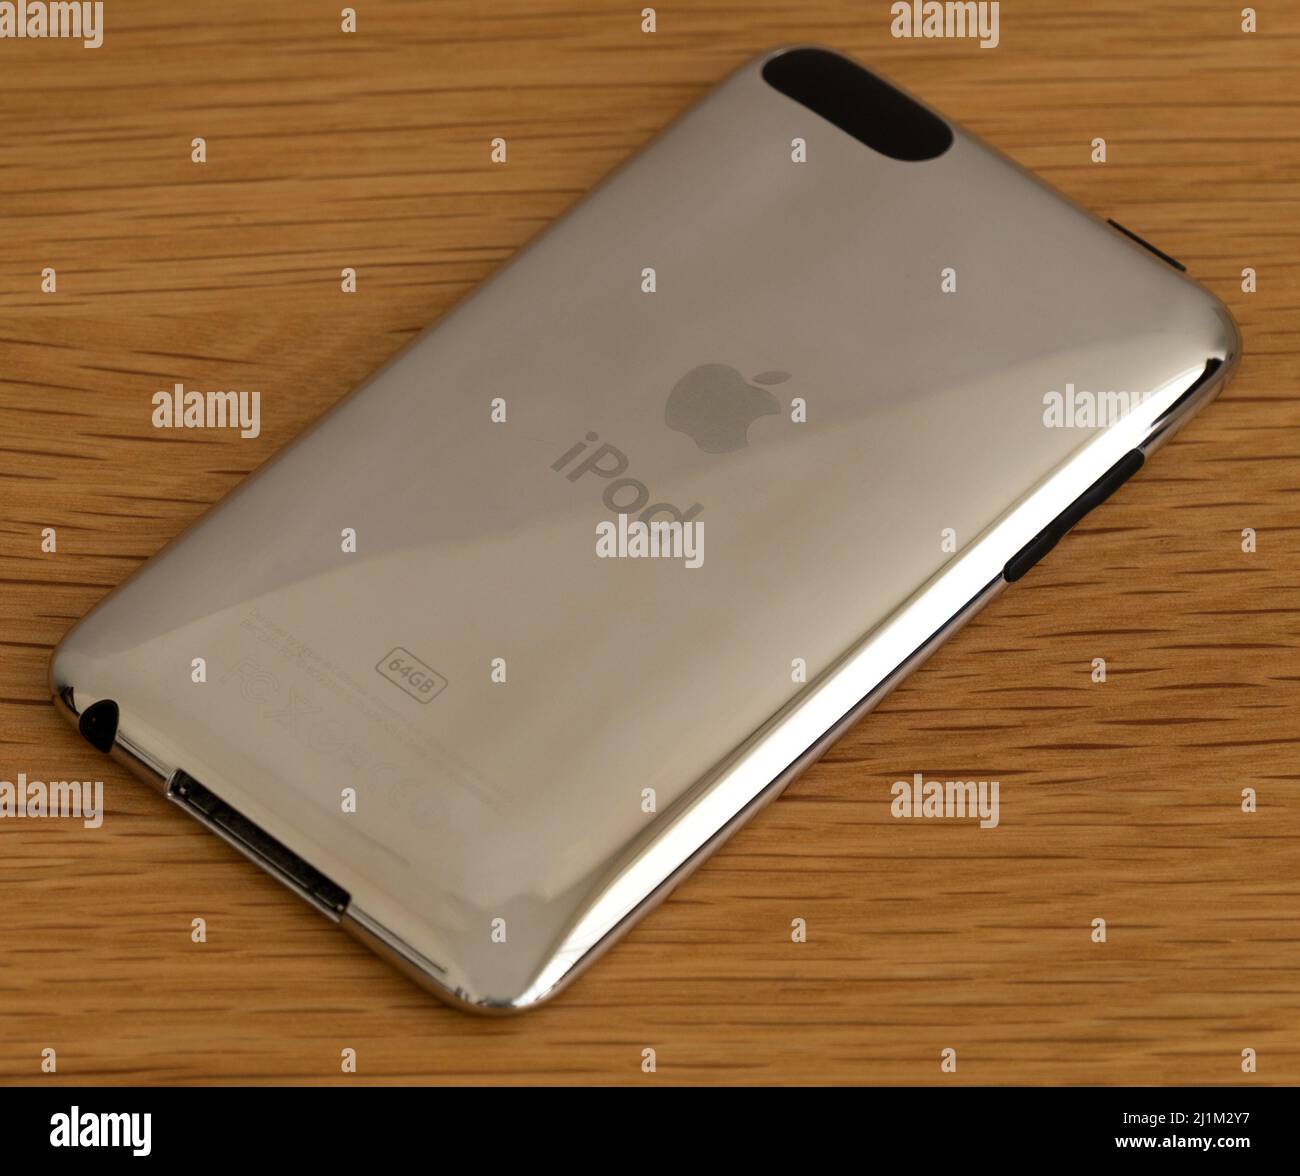 FOTOGRAFIA DI STOCK - Apple iPod Touch (3rd generazione) che mostra la copertina posteriore in alluminio argento cromato lucido con logo incisi e dettagli del prodotto Foto Stock